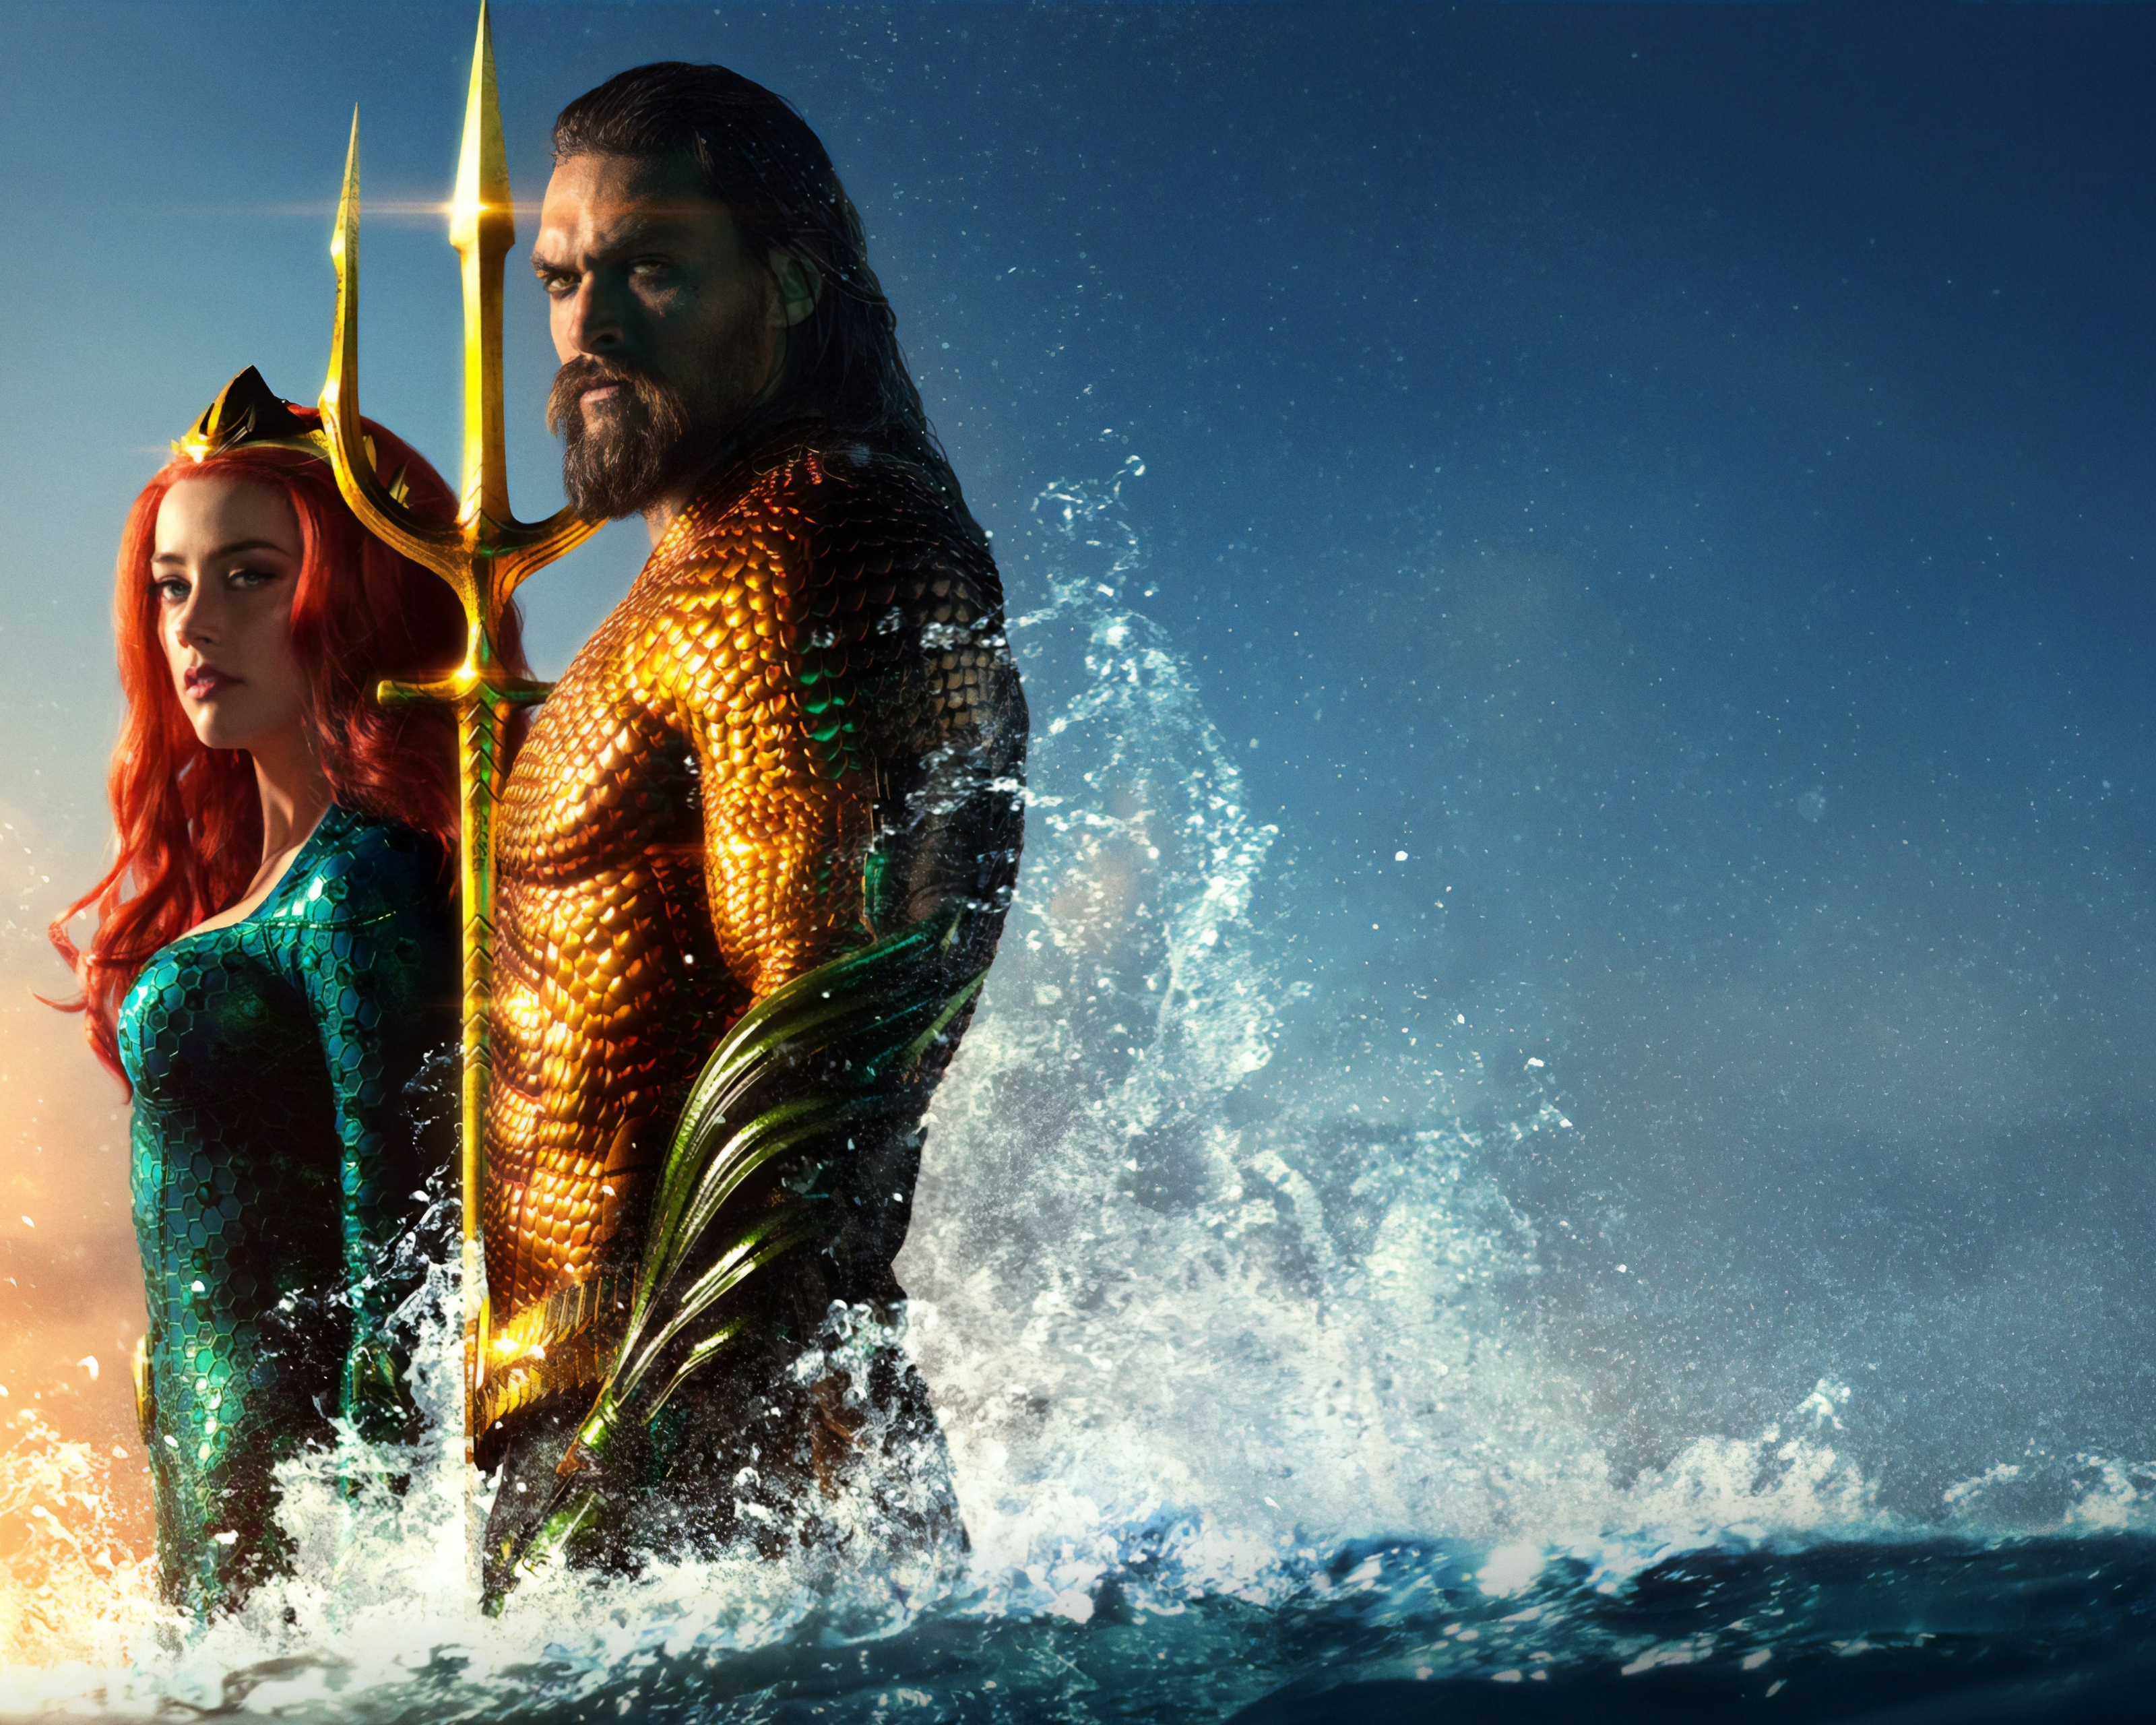 Fondos de pantalla de Aquaman (Película) para escritorio, descarga gratis  imágenes y fondos de Aquaman (Película) para PC 